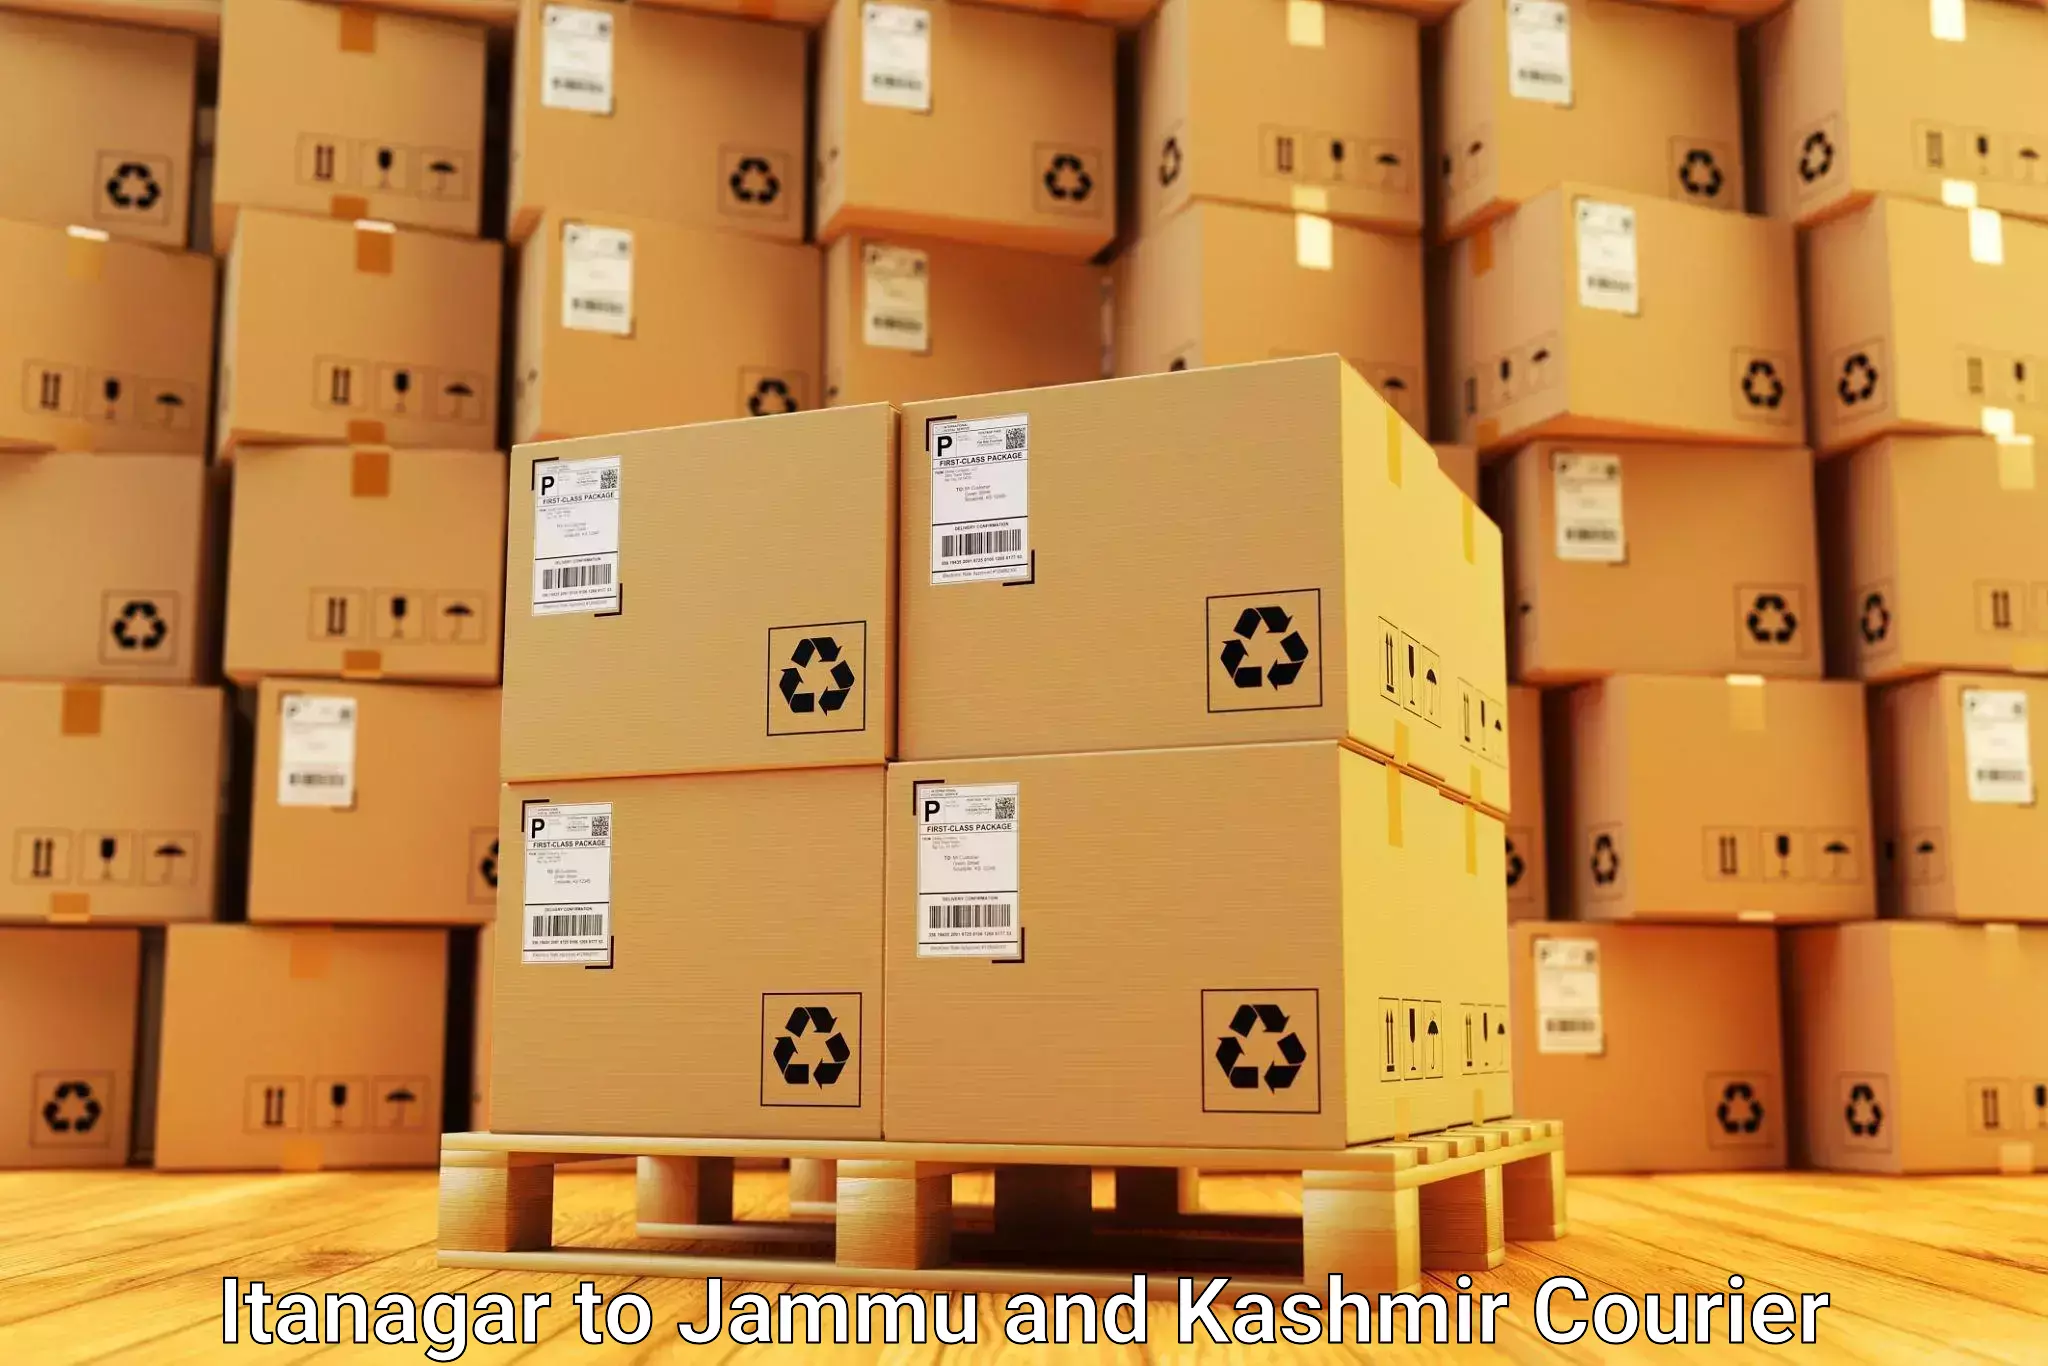 Efficient relocation services Itanagar to Kargil